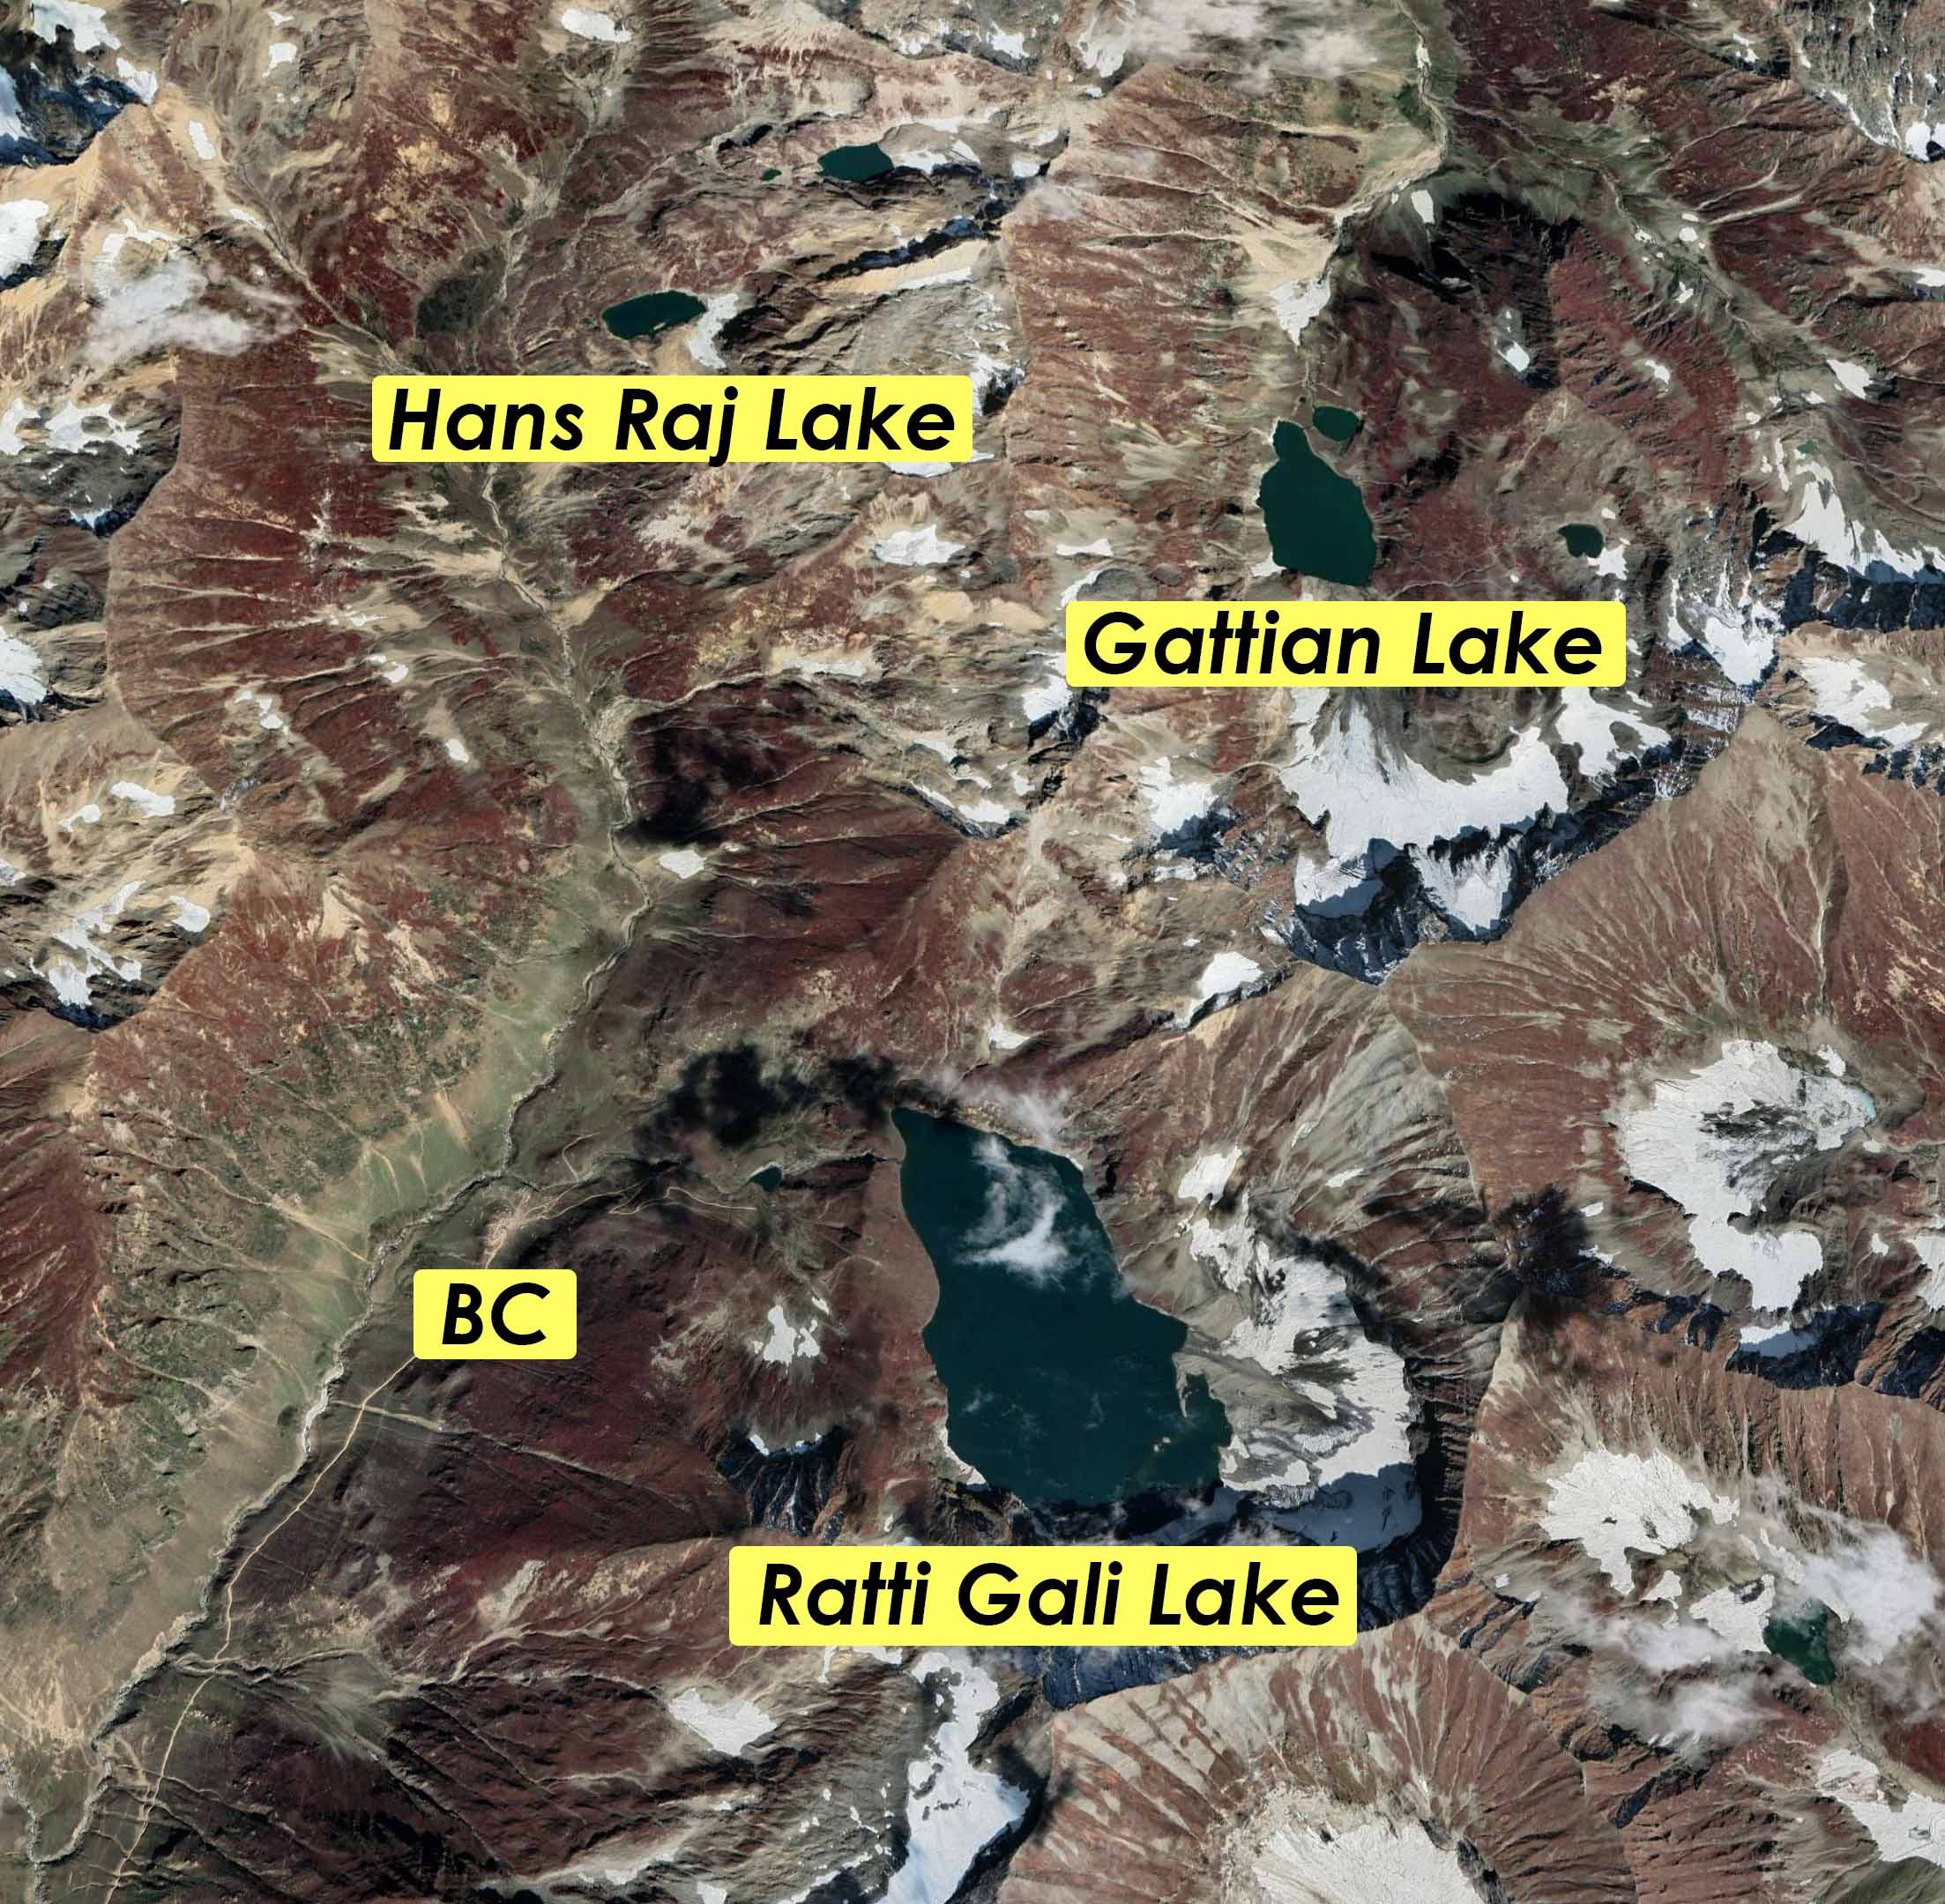 Ratti Gali Lake Map